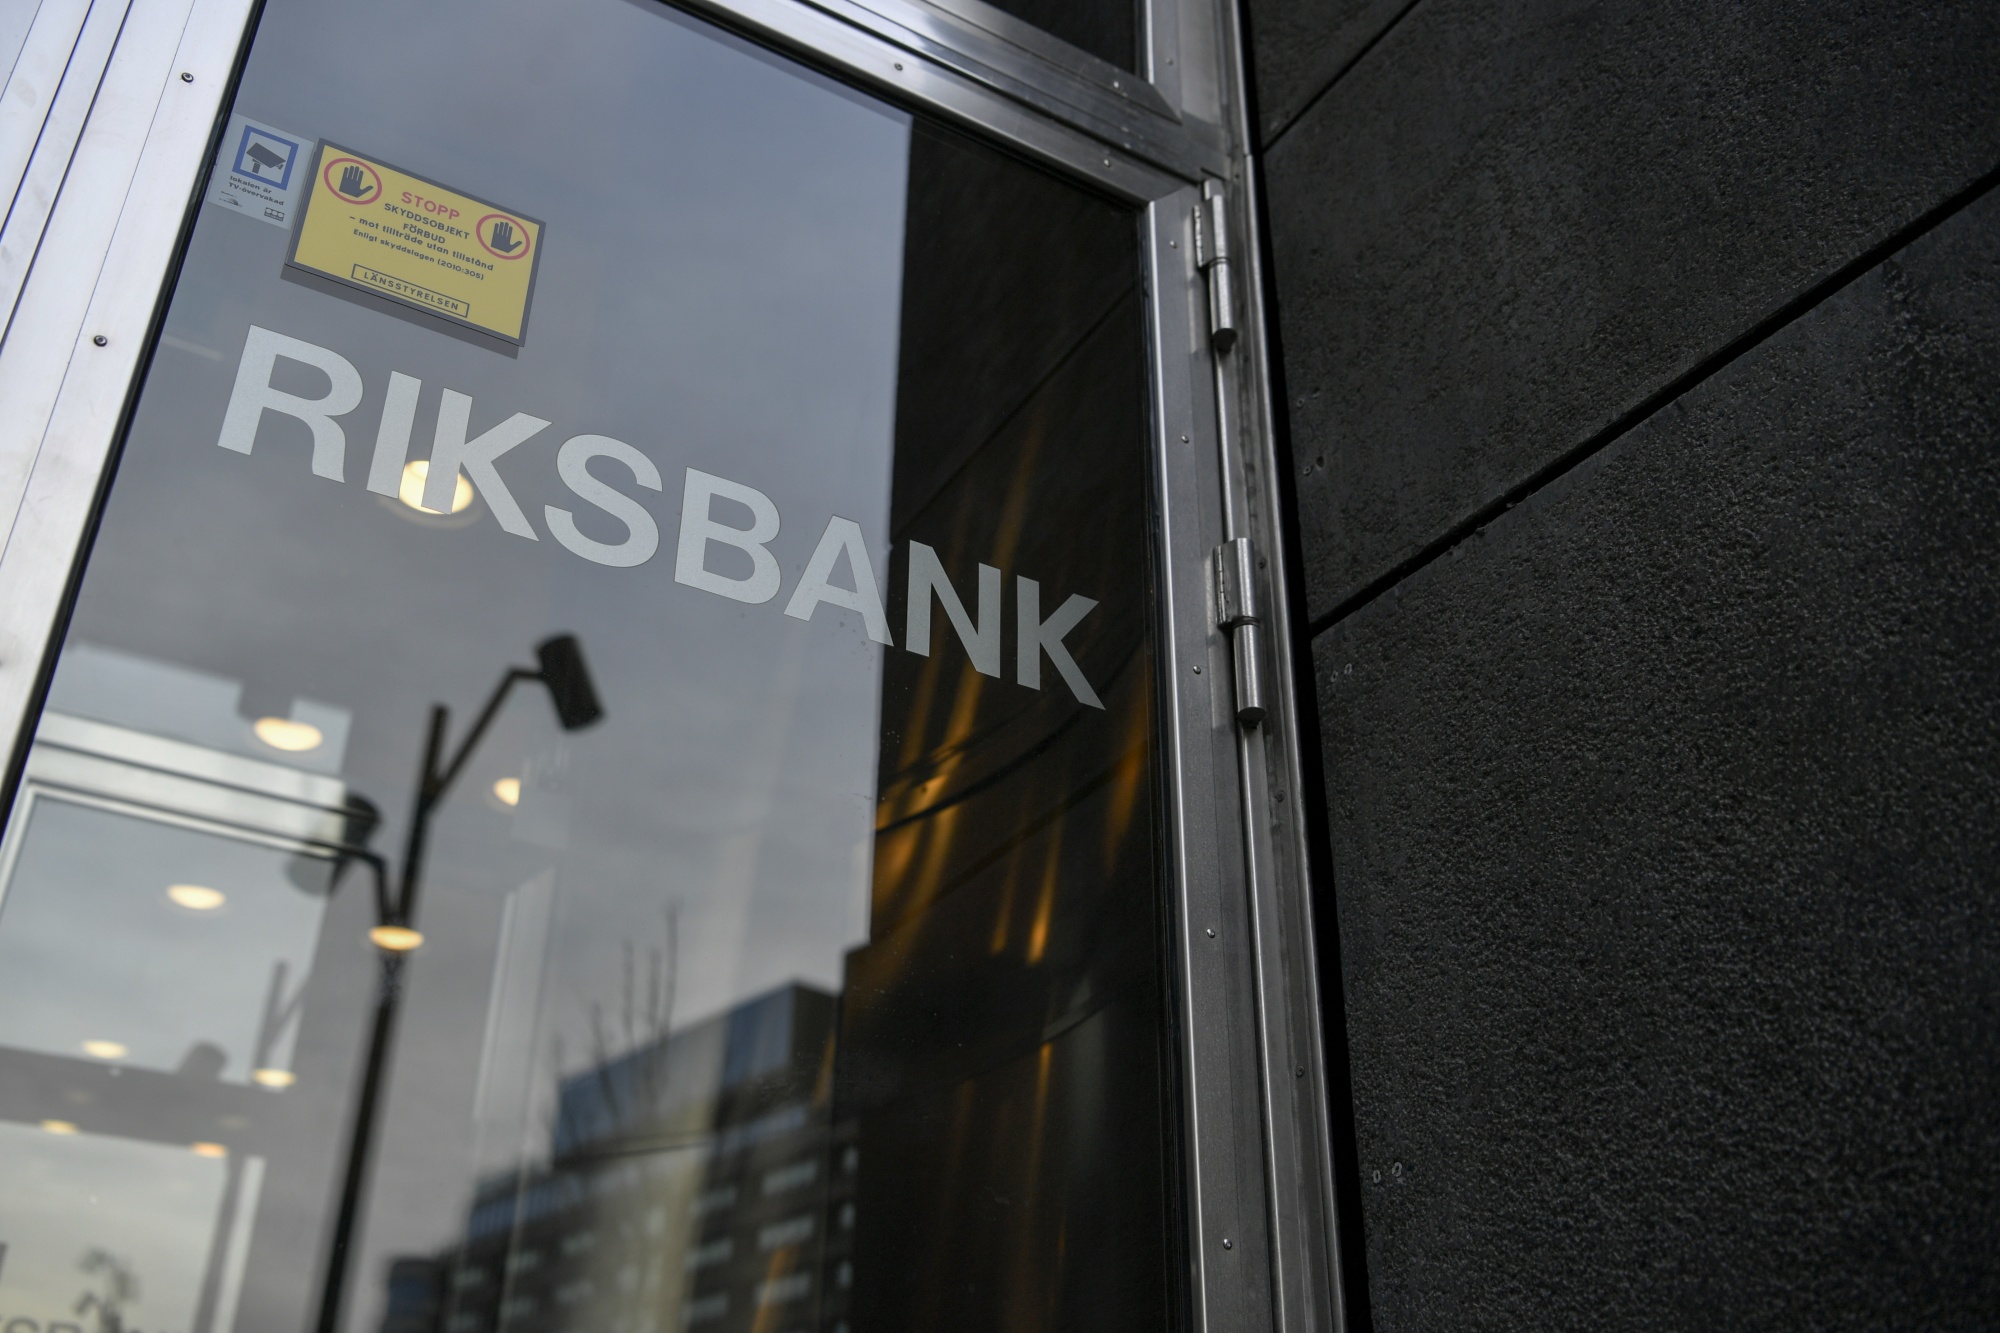 Sveriges Riksbank Governor Stefan Ingves Ends Subzero Experiment in Global Test Case
